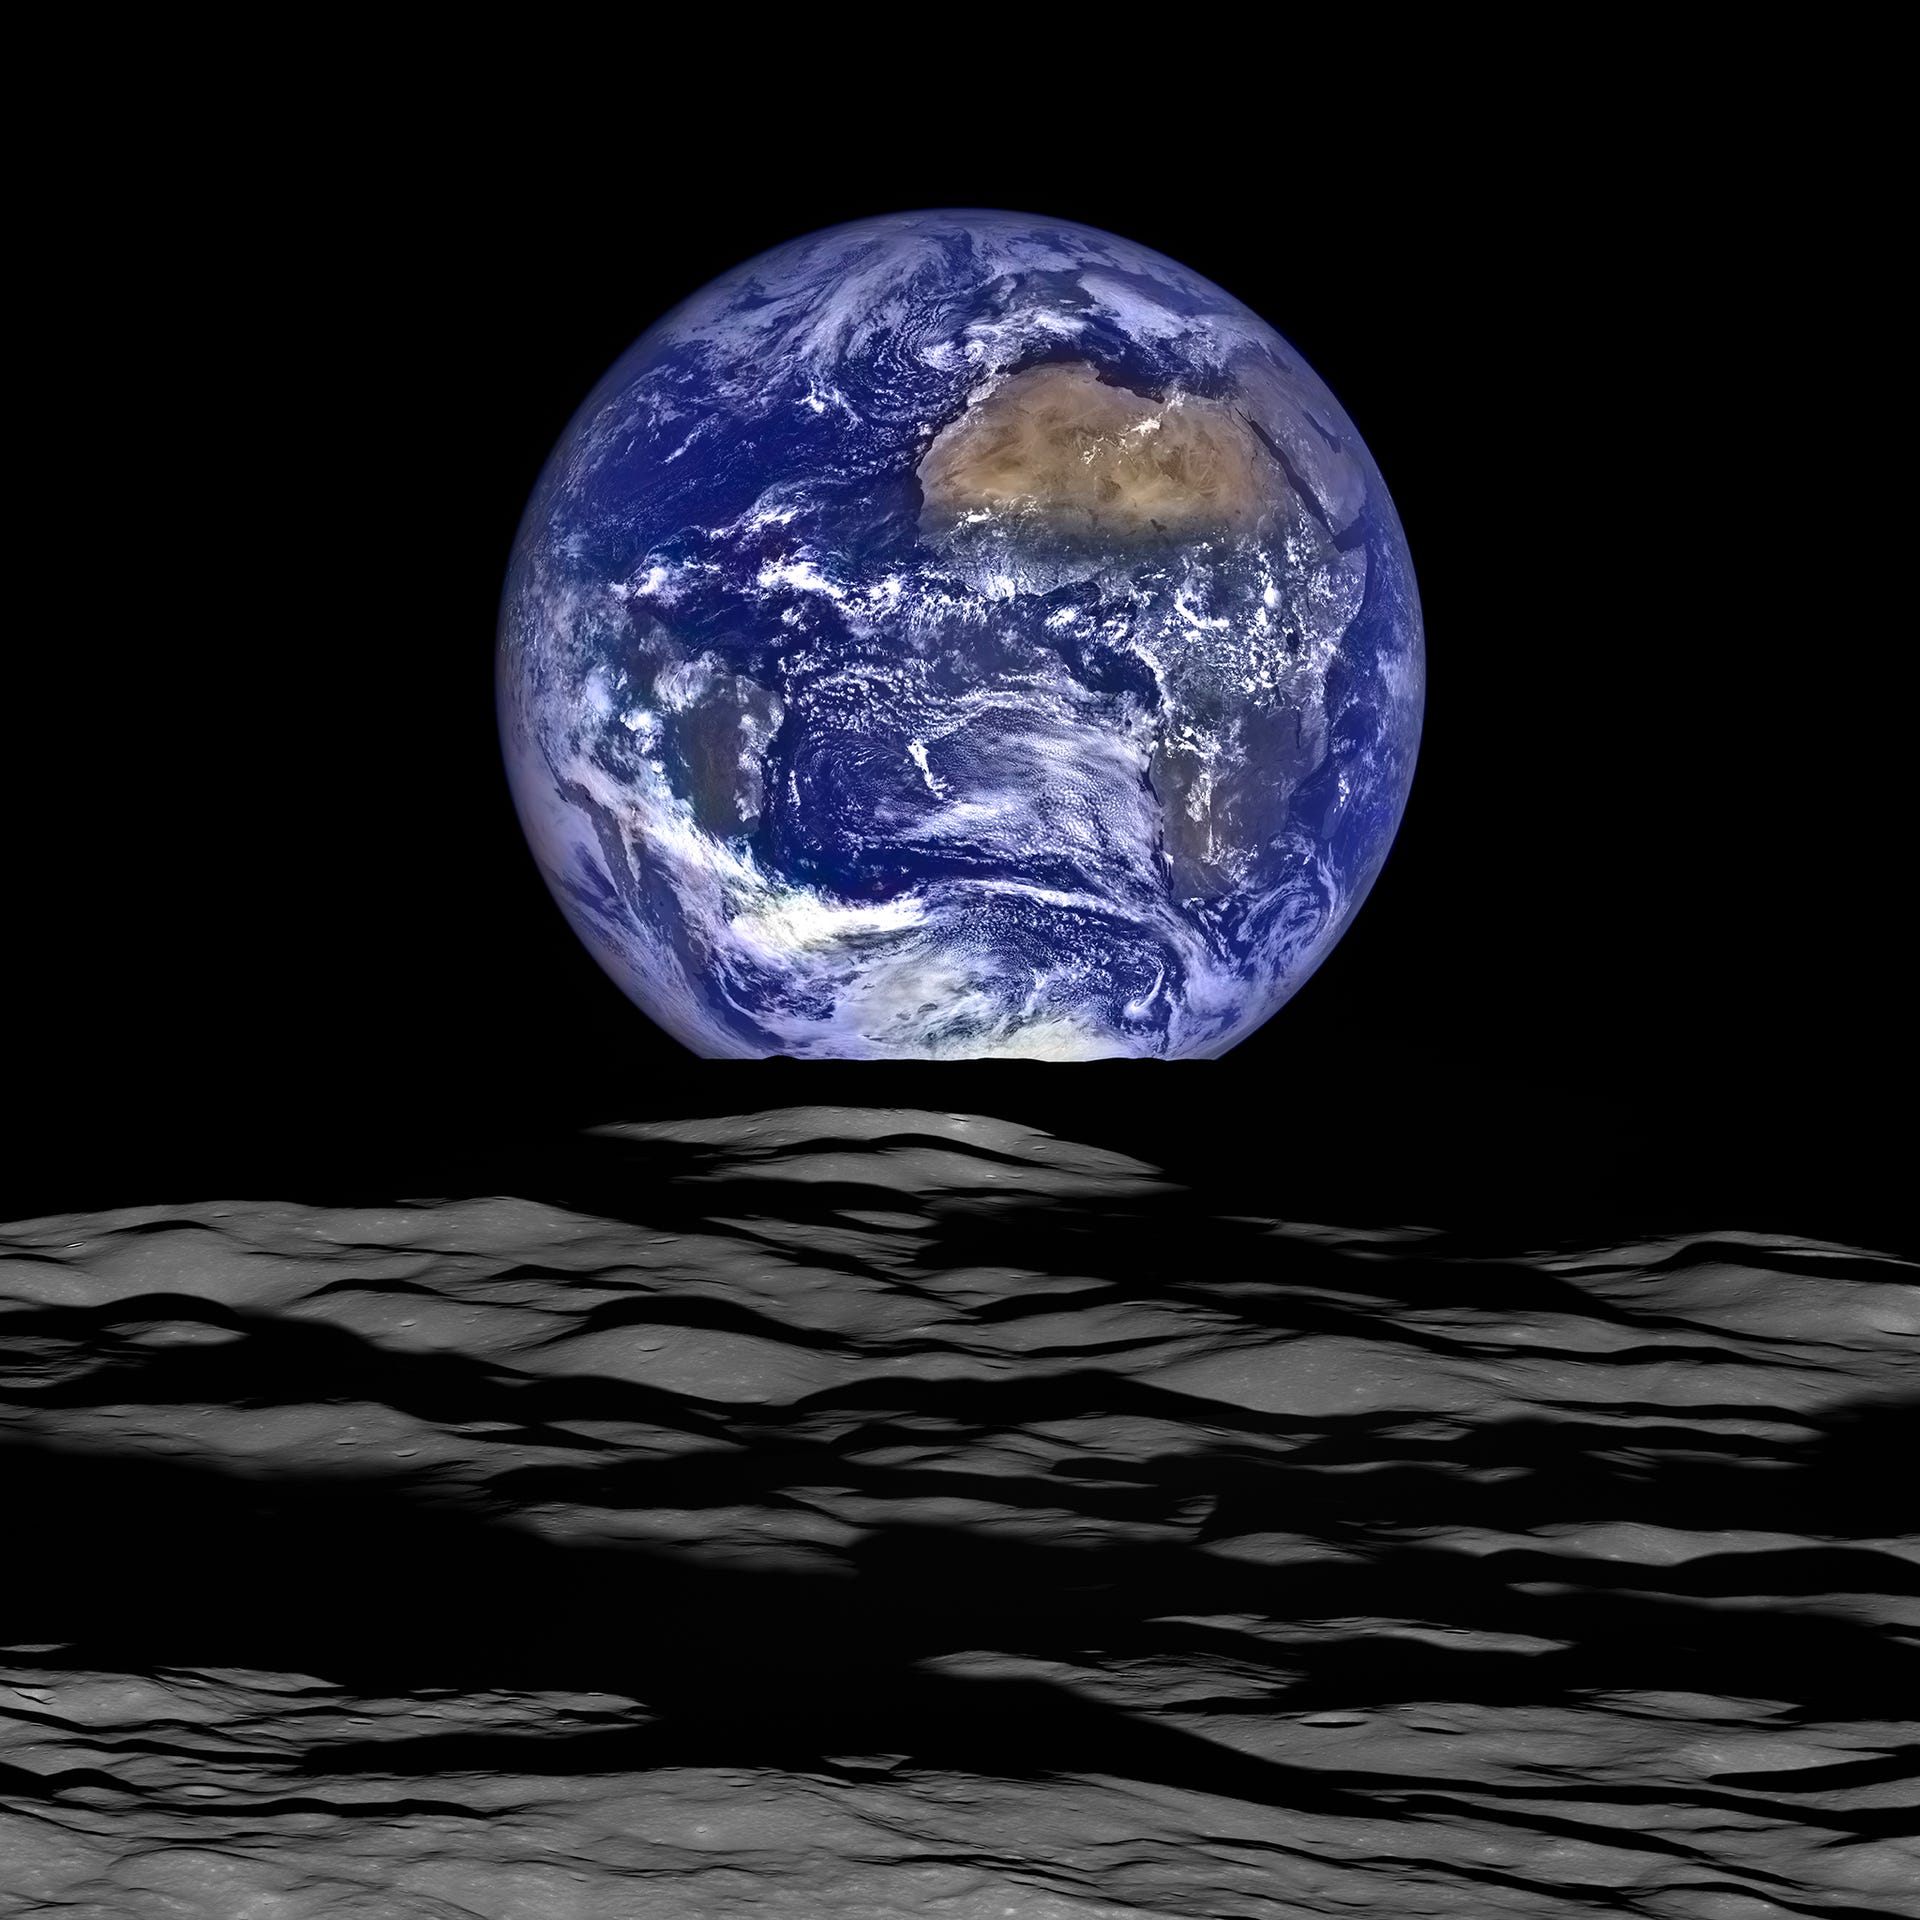 NASA Earthrise image